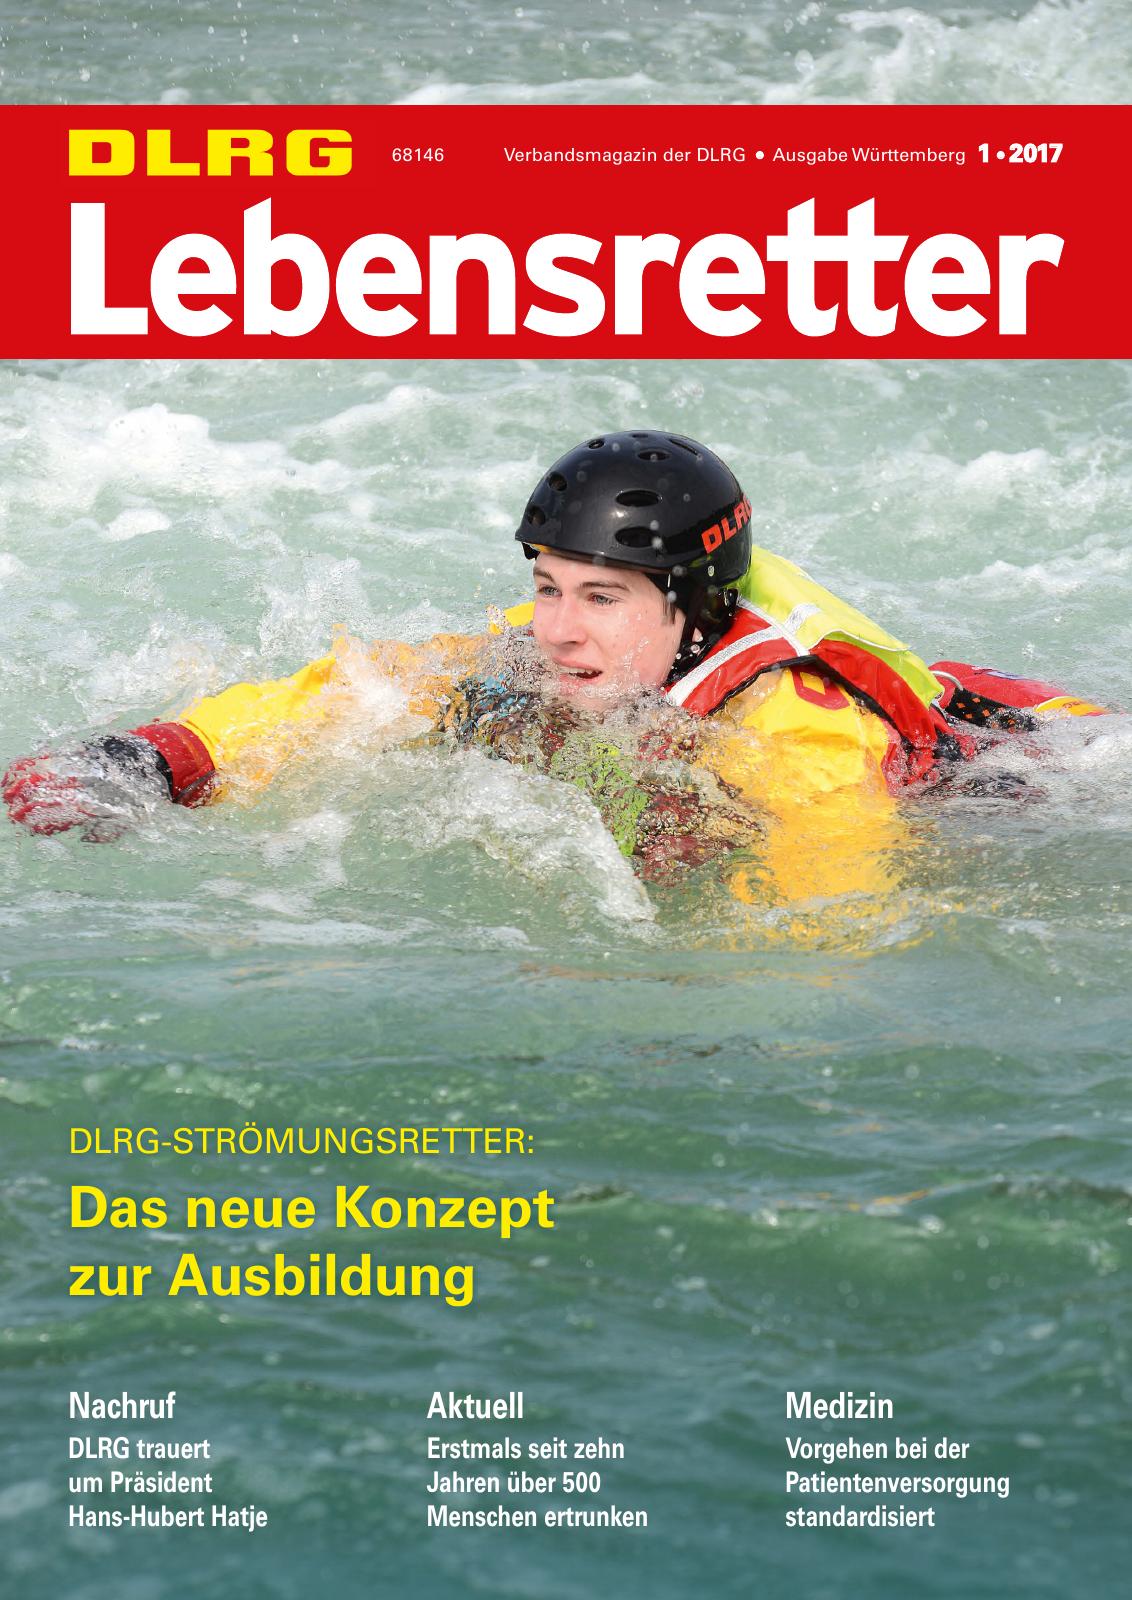 Vorschau Lebensretter 1/2017 - Regionalausgabe Württemberg Seite 1